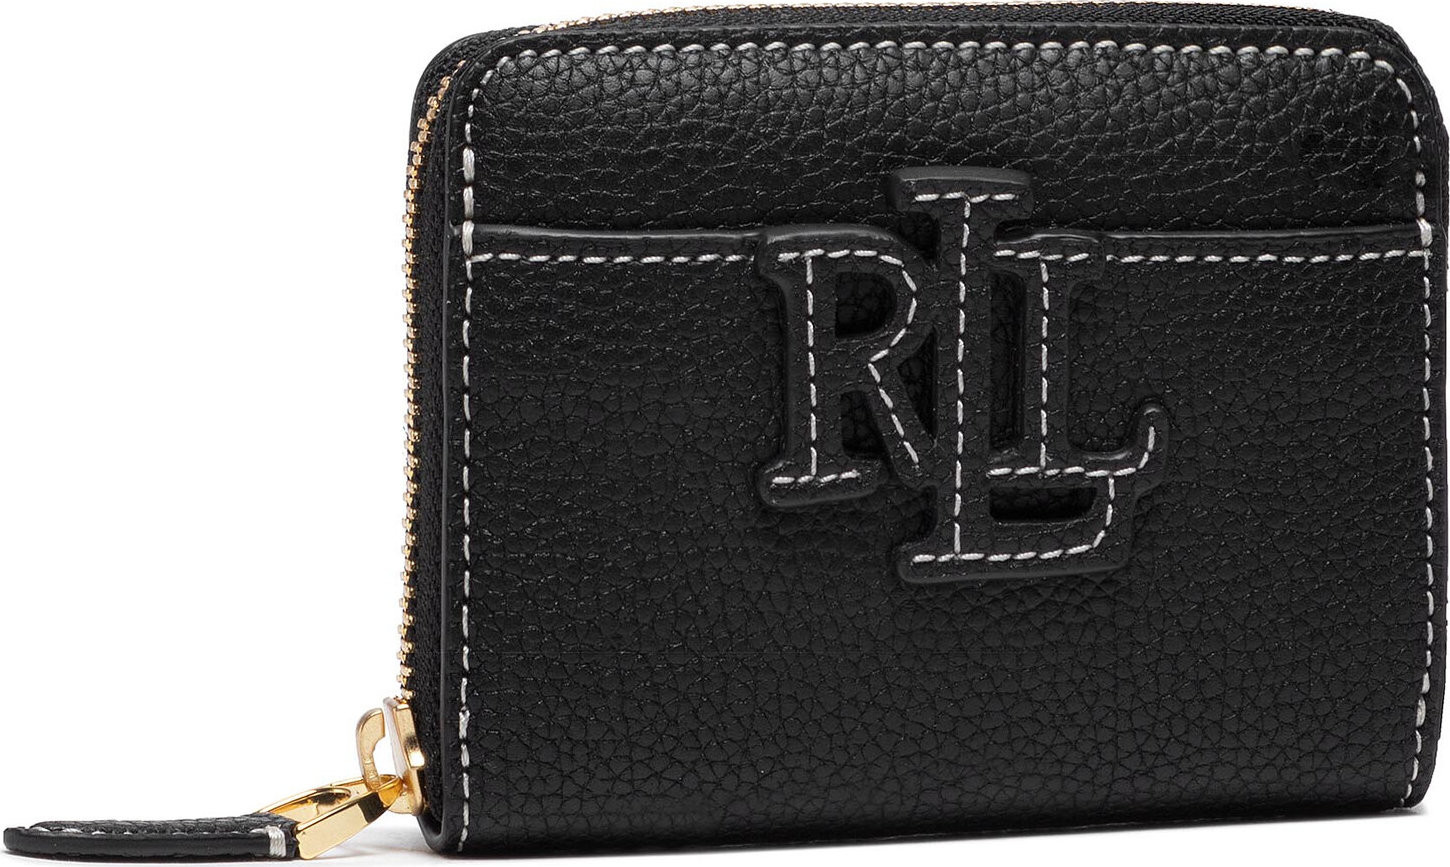 Malá dámská peněženka Lauren Ralph Lauren Logo Zip Wlt 432836654001 Black/Ecru